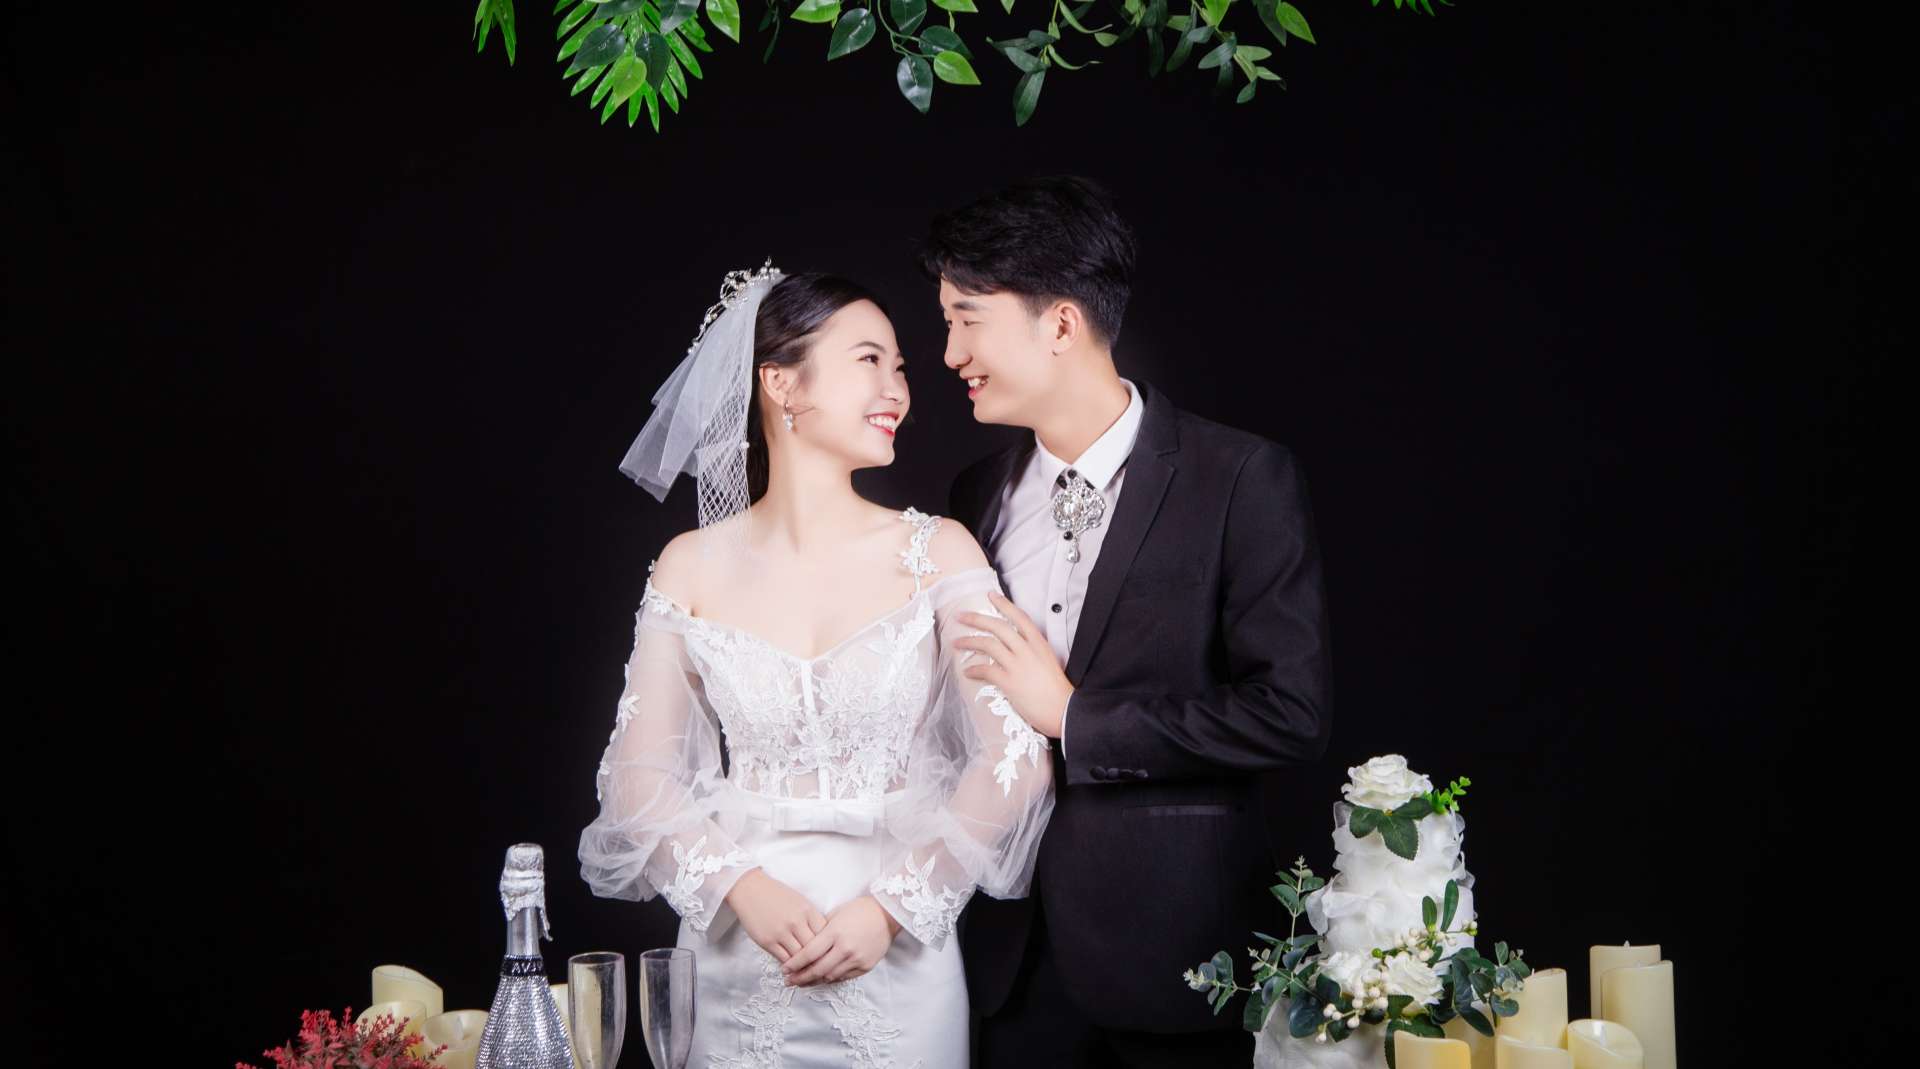 杨佳俊-盛林萍  10月4日婚礼记录片 「水舞新娘出品 」